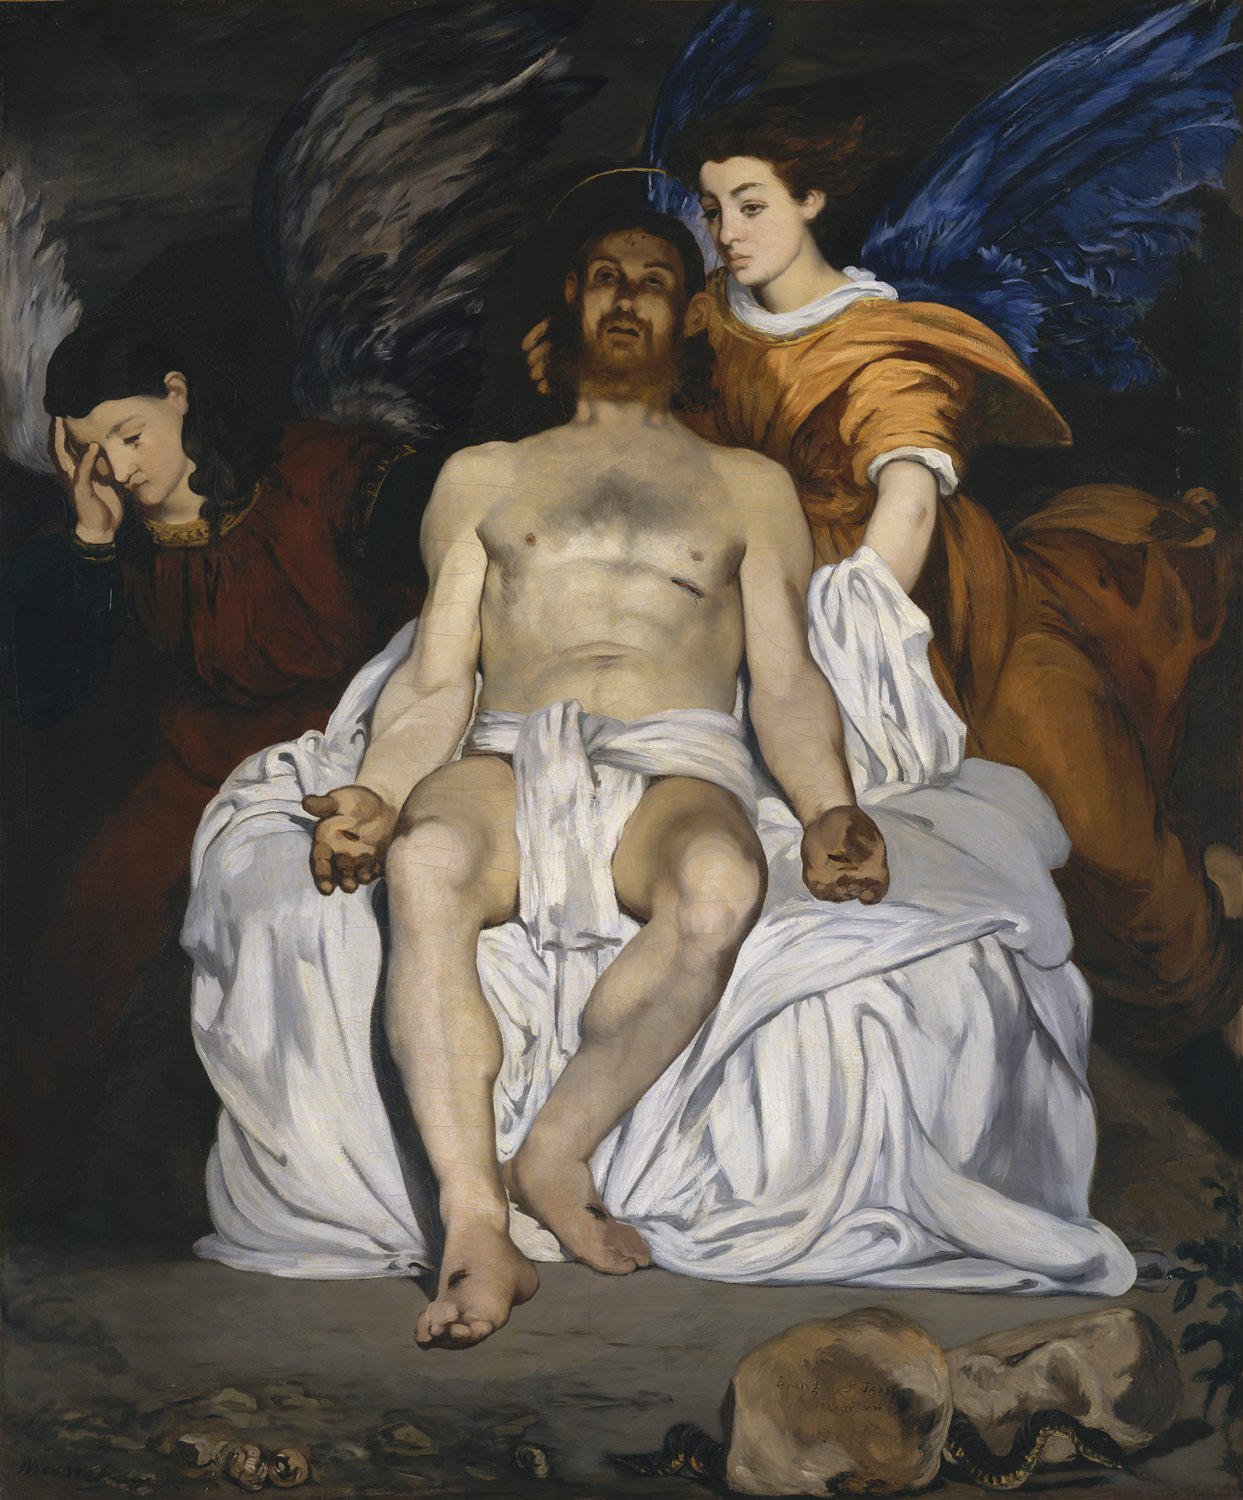 Edouard Manet (1832-1883), Le Christ mort et les anges, huile sur toile, 180 x 150 cm, New-York, Metroplitan Museum © Metroplitan Museum 